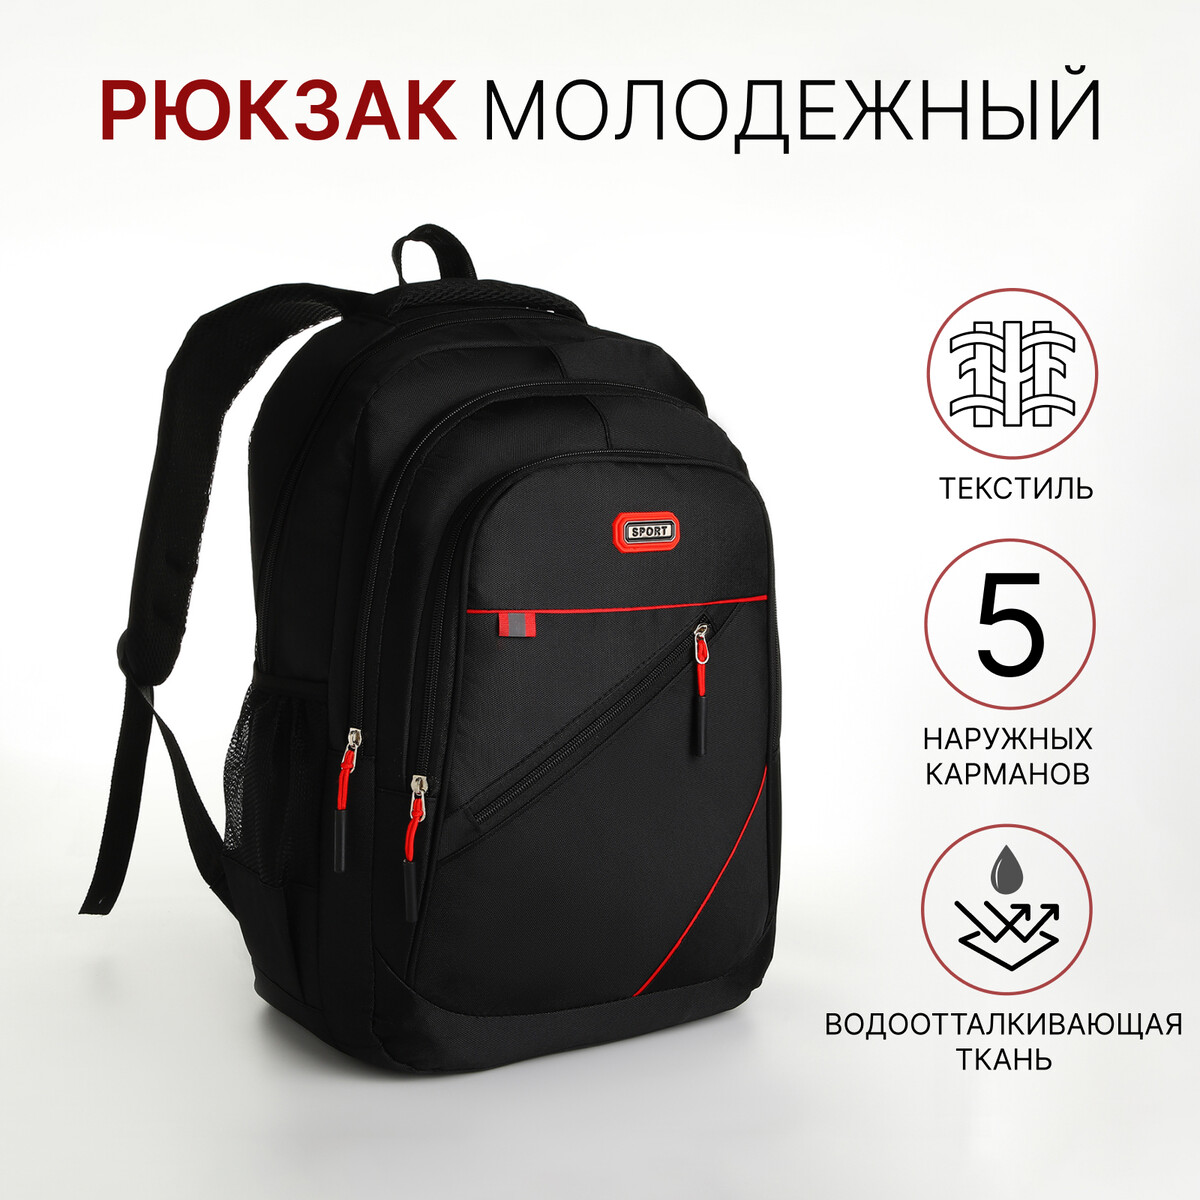 Рюкзак молодежный из текстиля на молнии, 5 карманов, цвет черный/красный